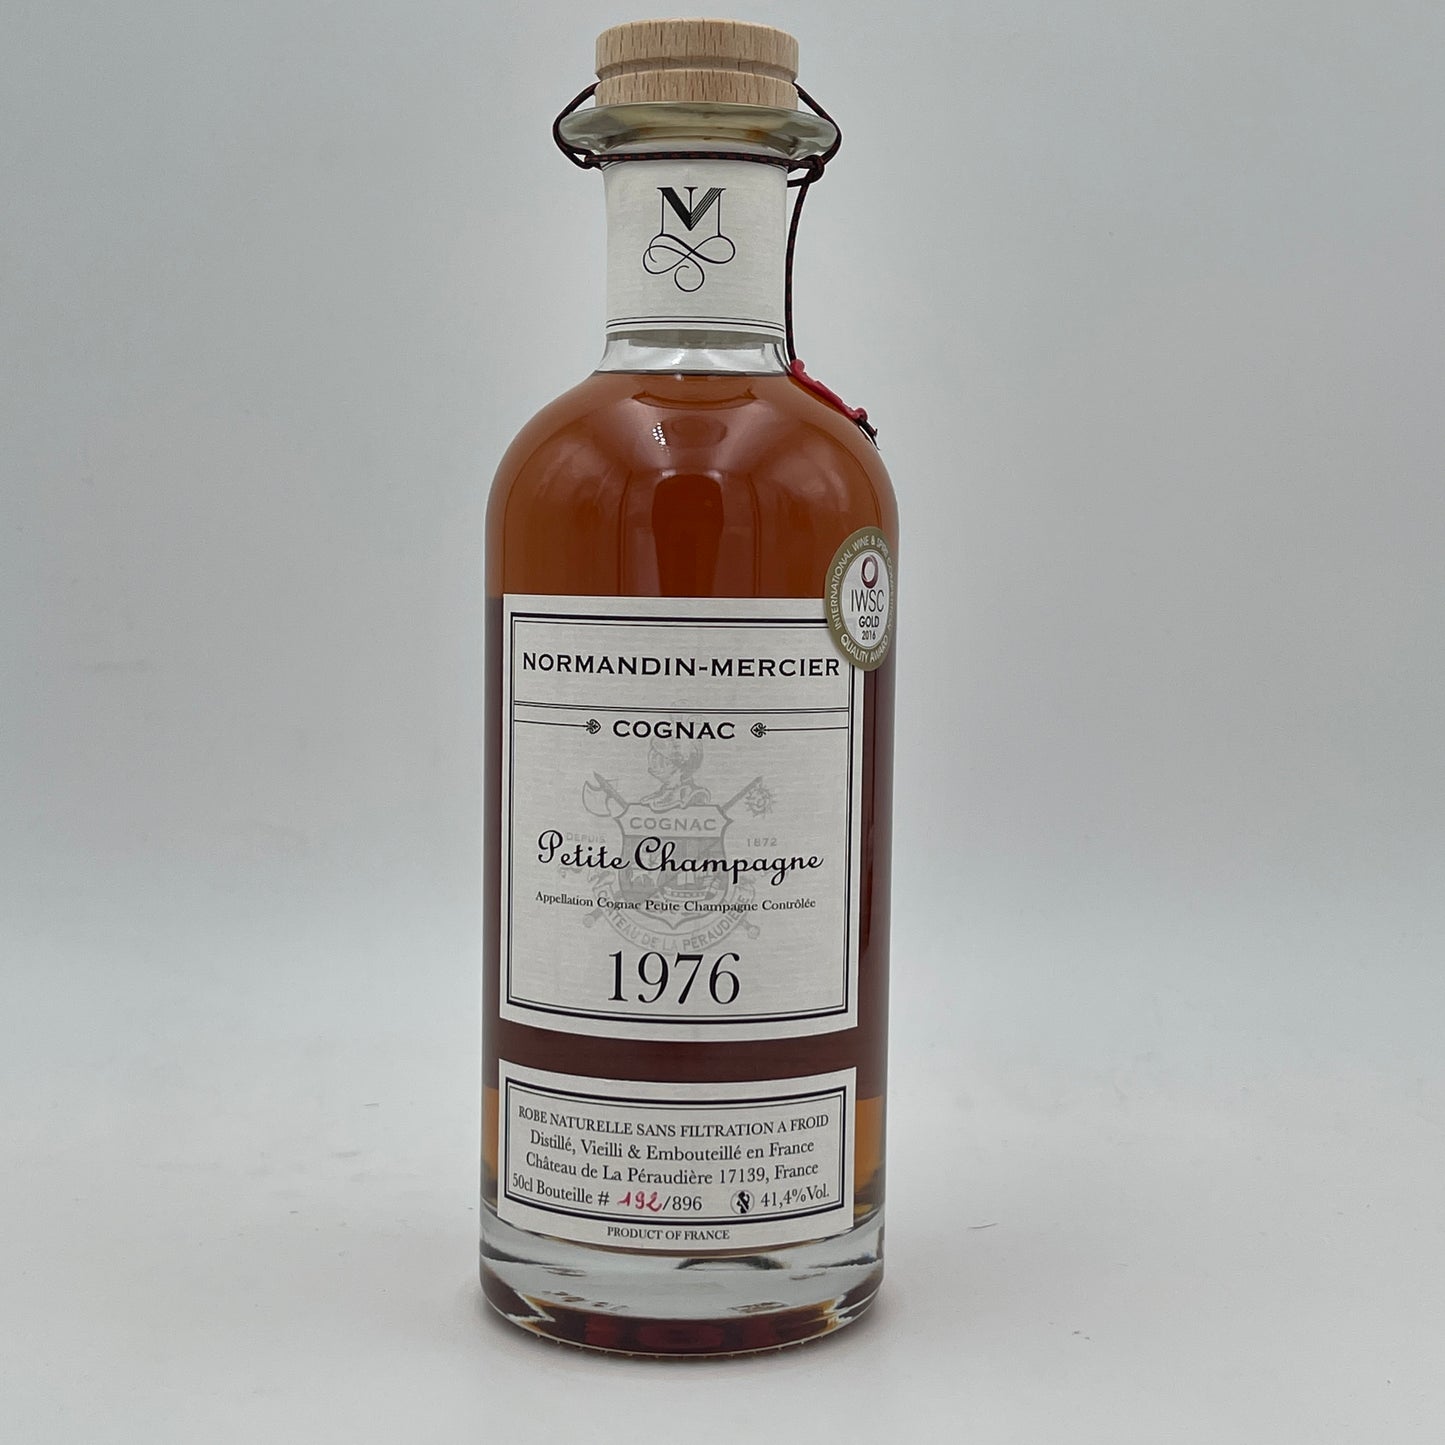 Normandin Mercier Cognac Vintage 1976 alc 41.4%